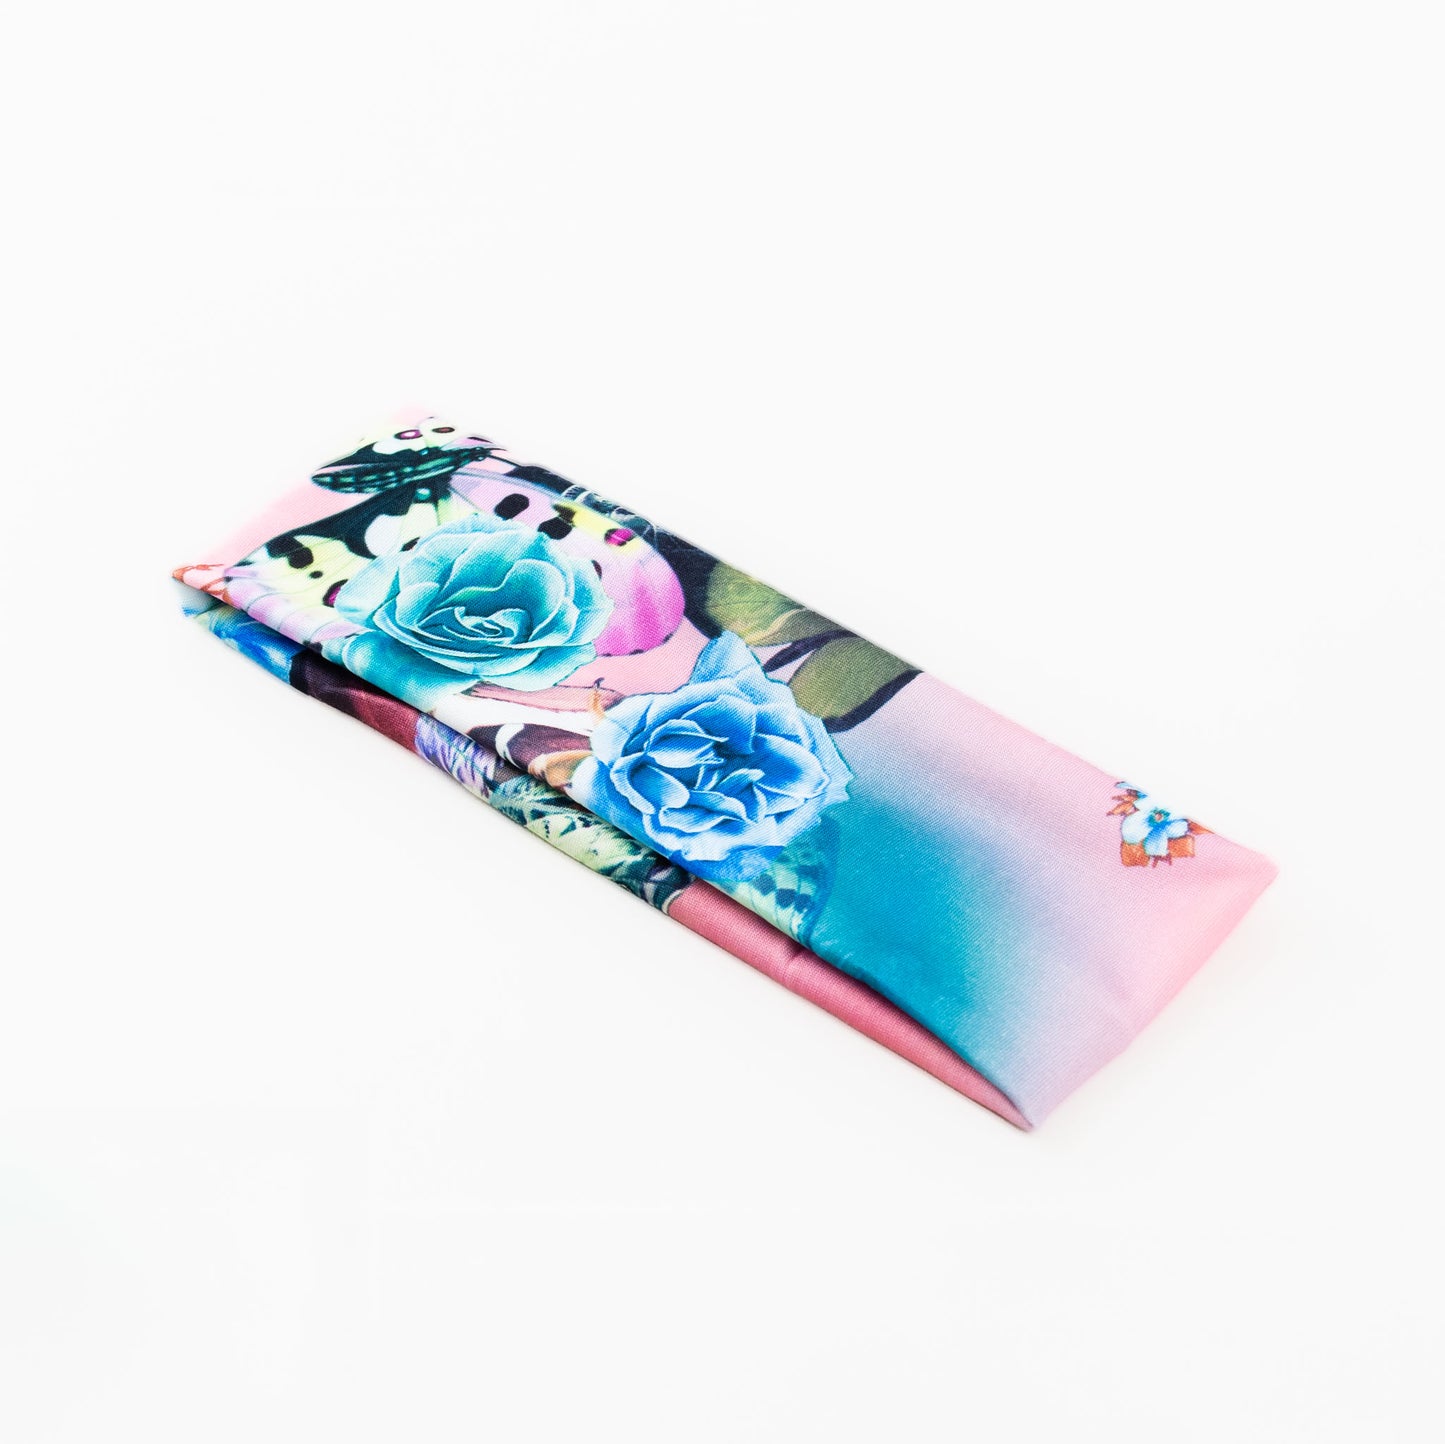 Bentiță de păr simplă cu, imprimeu flower jungle - Roz, Albastru